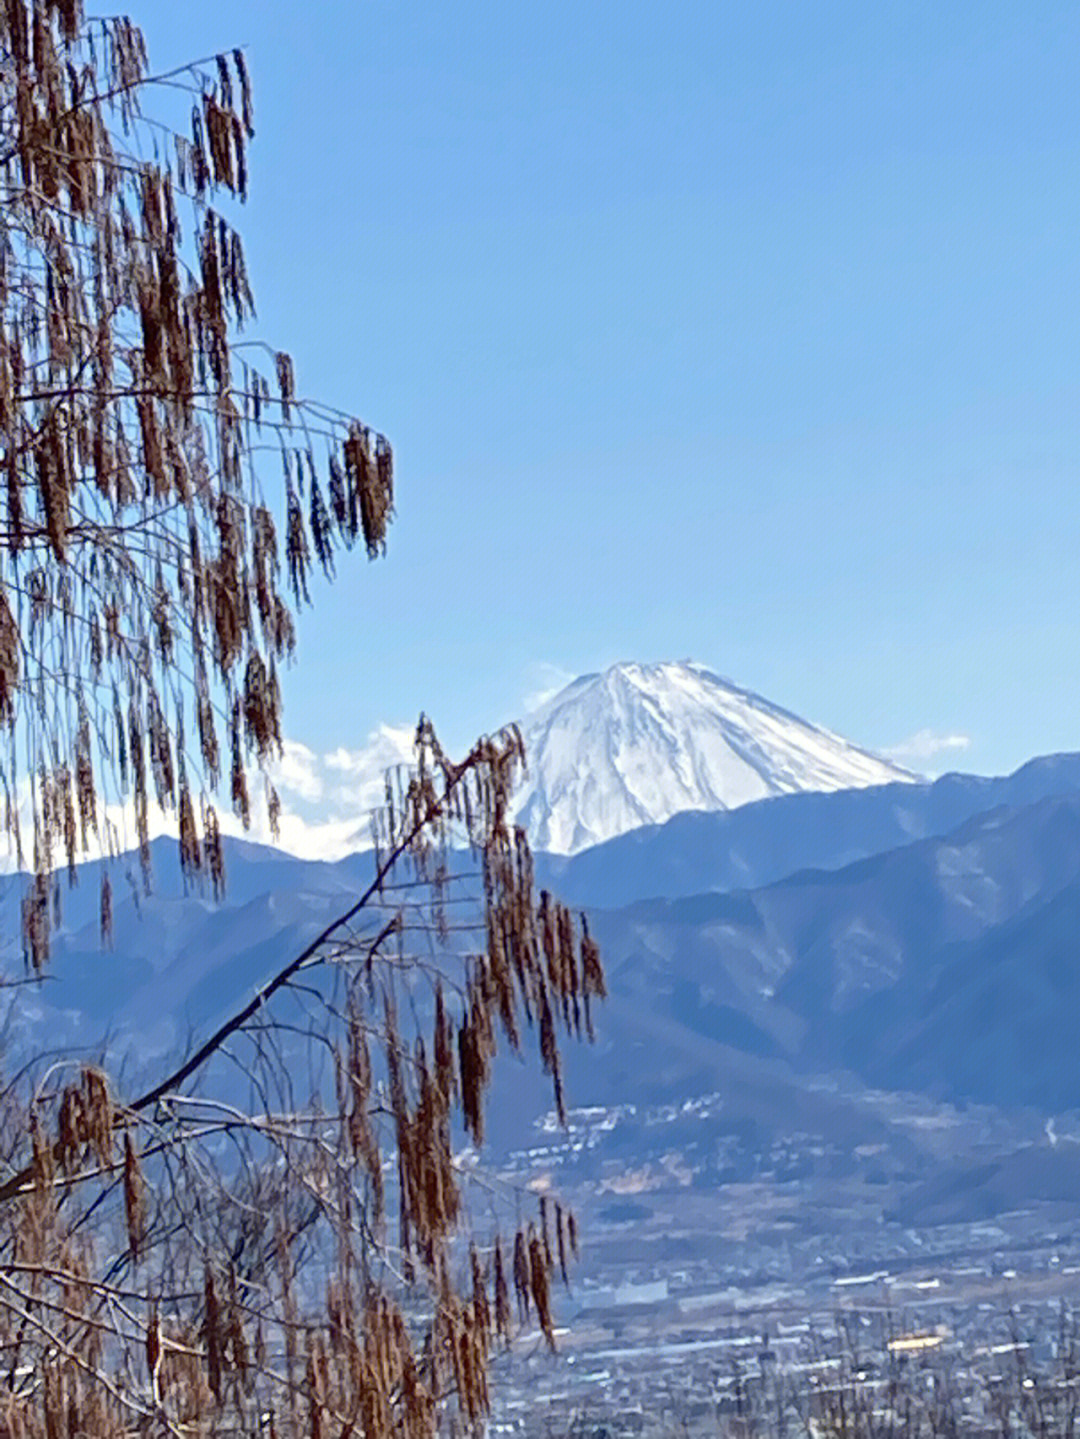 今天的富士山上覆雪了